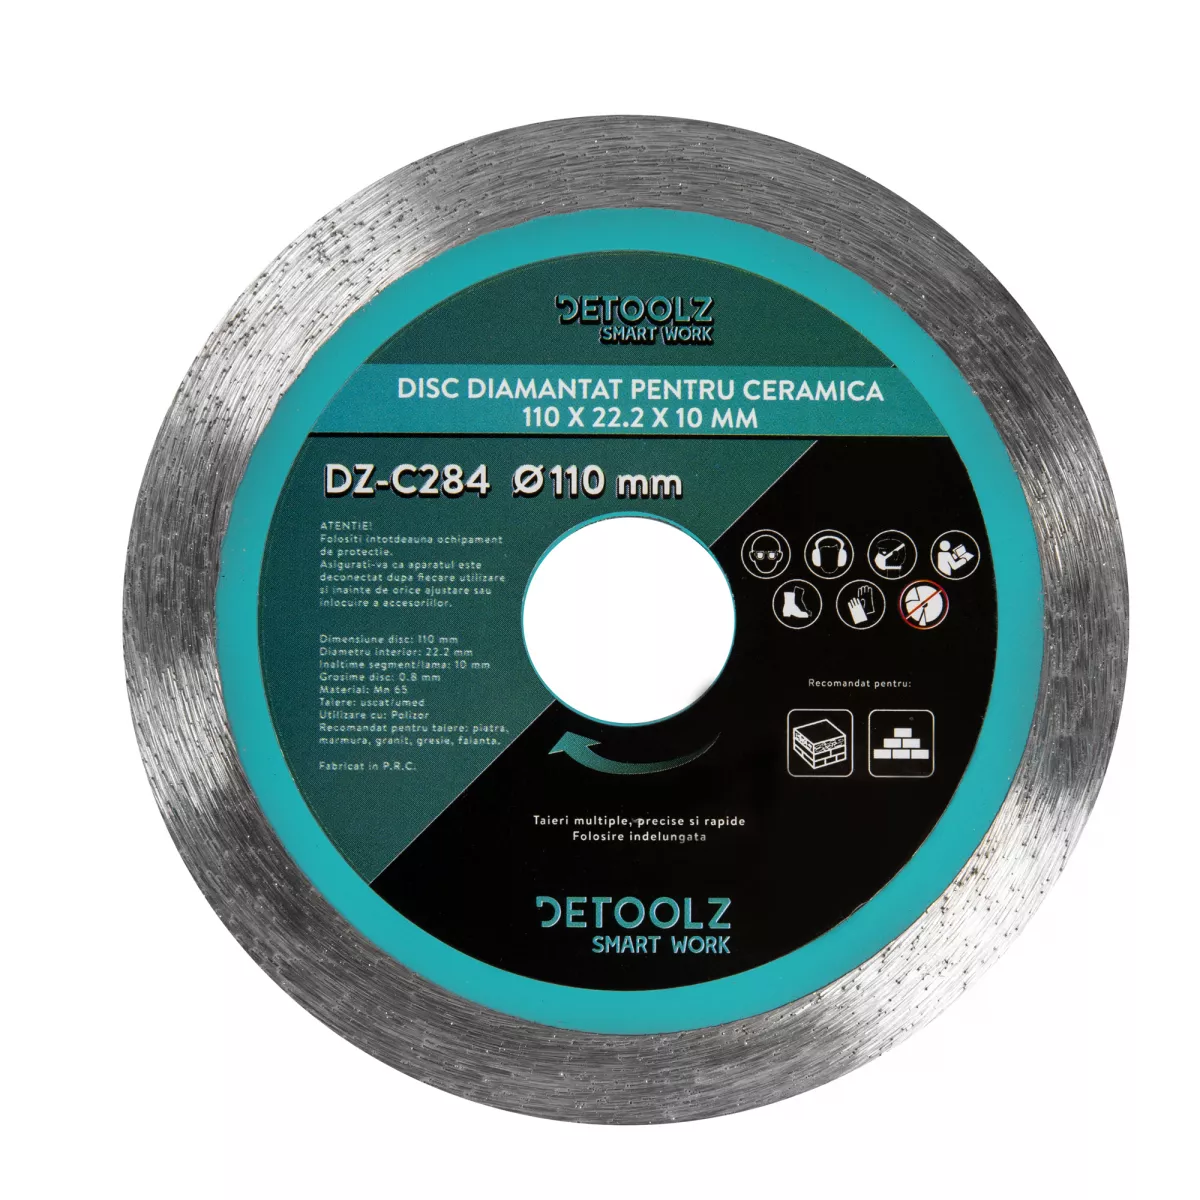 Disc diamantat pentru ceramica 110x22.2x1.6x10mm, [],bricolajmarket.ro